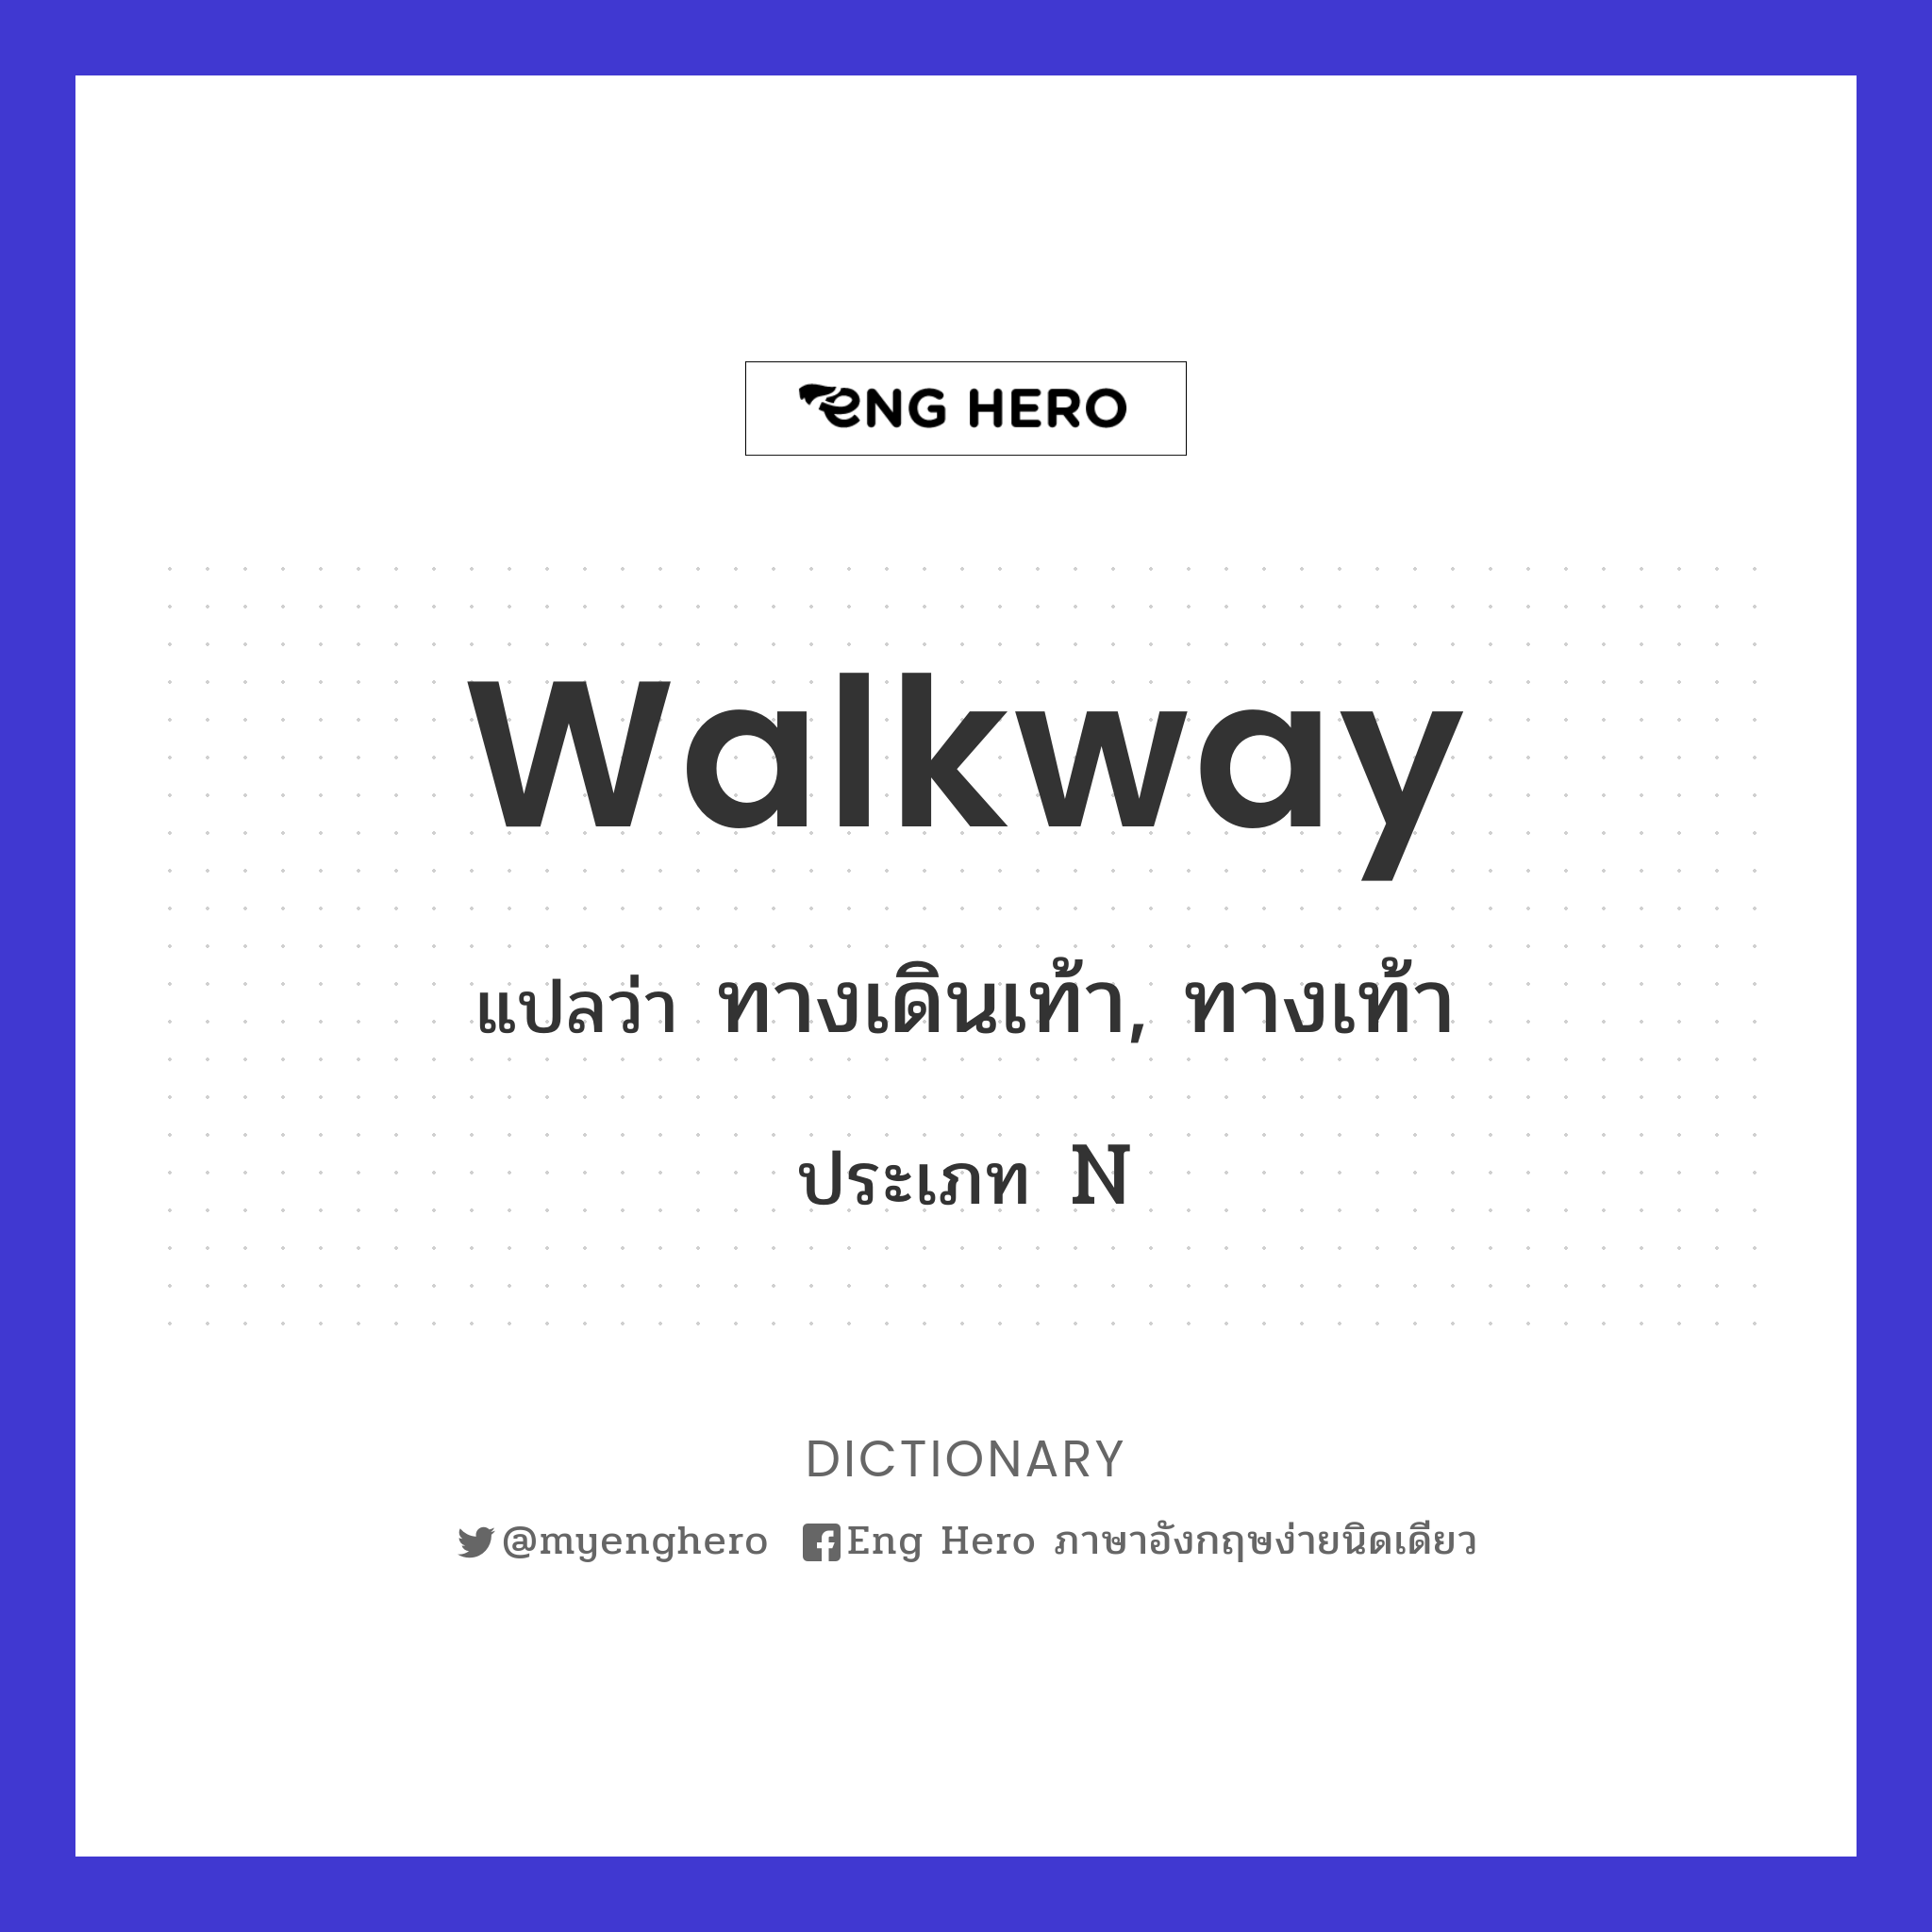 Walkway แปลว่า ทางเดินเท้า, ทางเท้า | Eng Hero เรียนภาษาอังกฤษ ออนไลน์ ฟรี